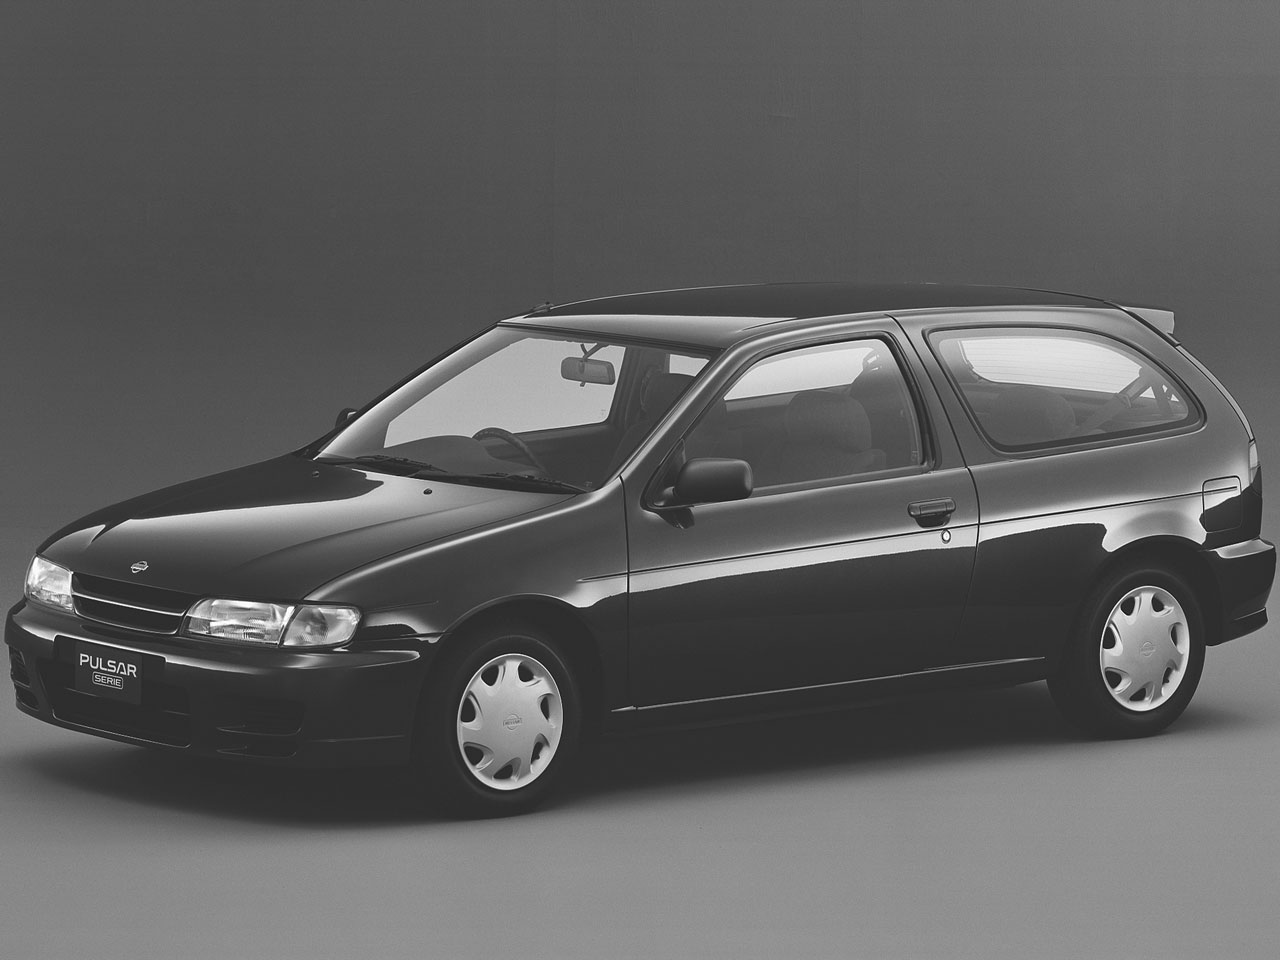 日産 パルサーセリエ 1995年モデル 新車画像